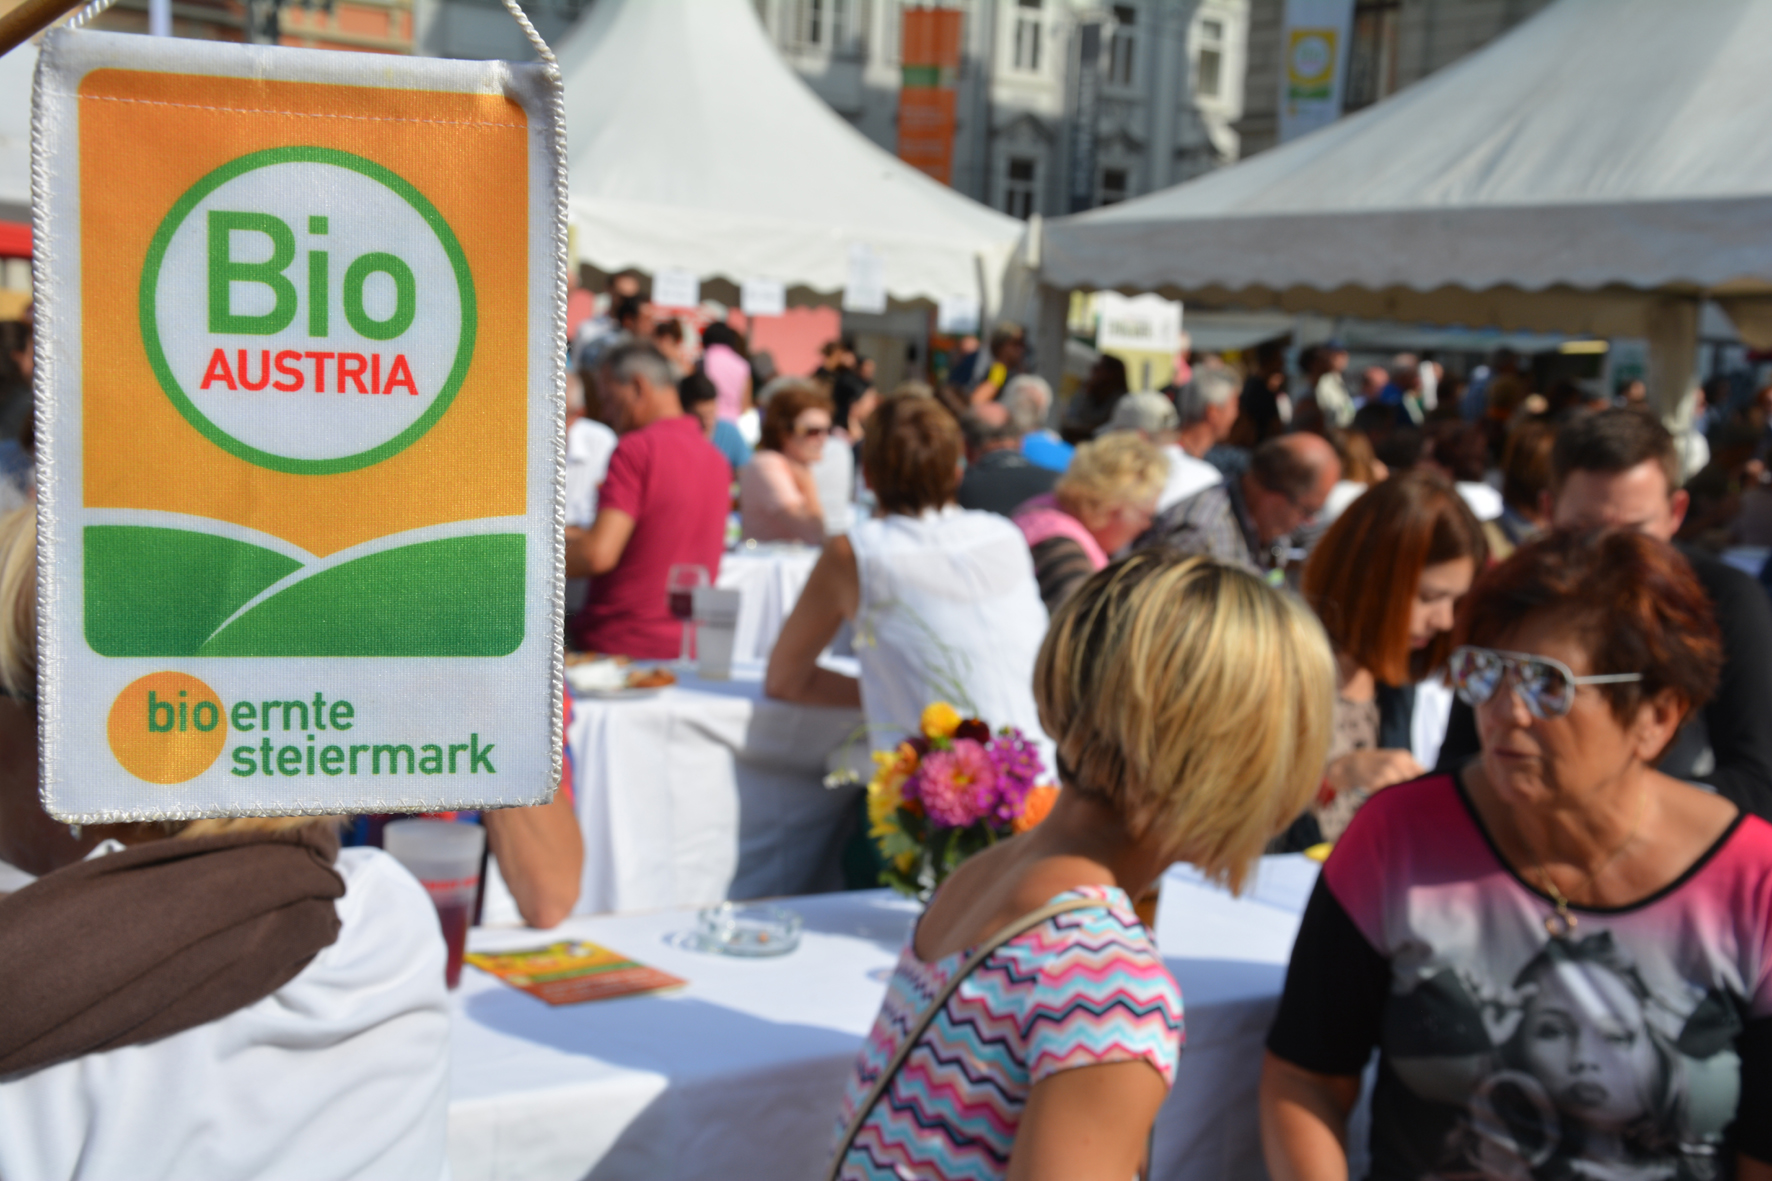 Bio Ernte Steiermark Fest